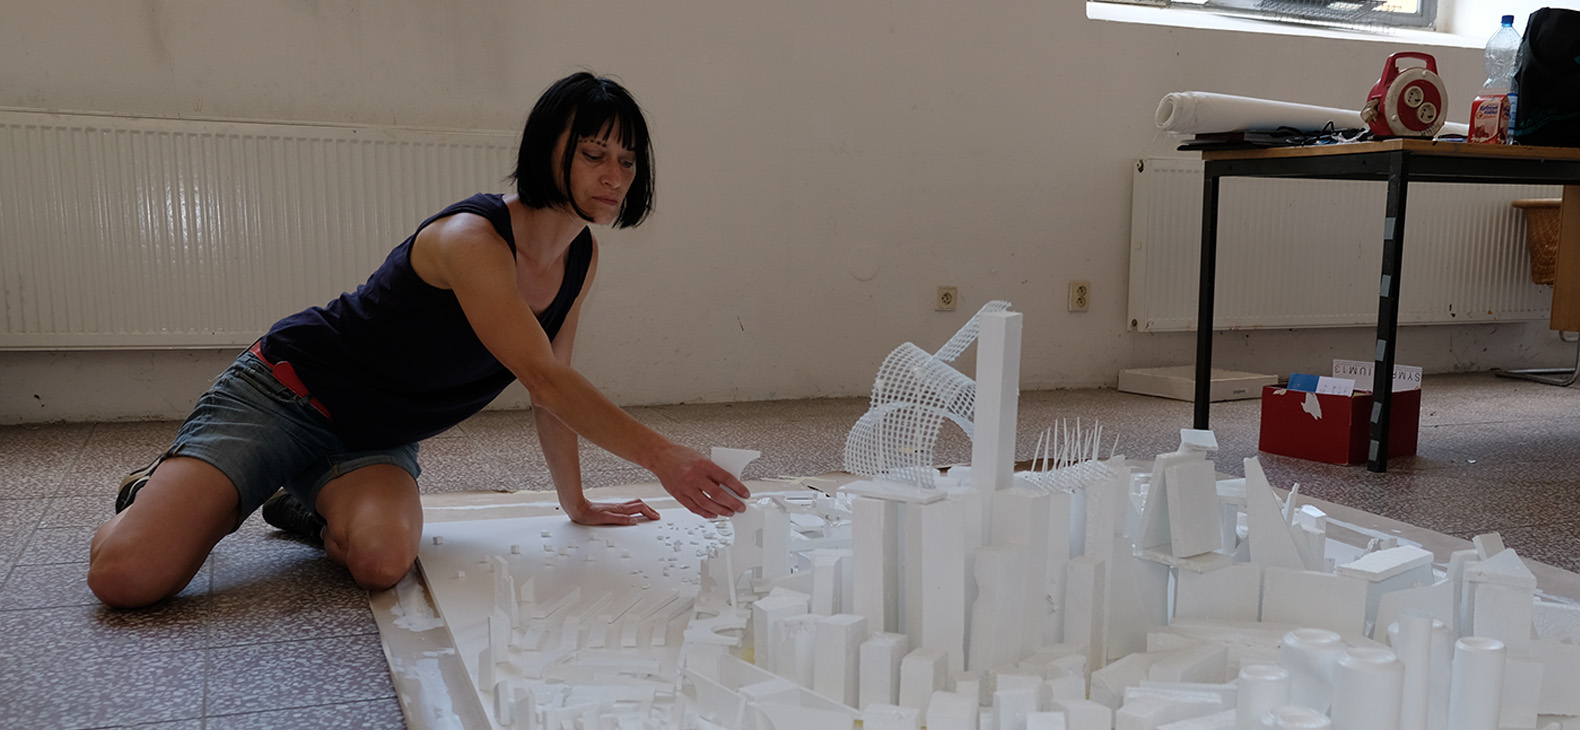 Residenzprogramm Schafhof; Künstlerinnen und Künstler 2023: Margit Greinöcker, Bild: Künstlerin am Boden knieend über einer Arbeit, die vermutlich ein Art weißes Modell einer Stadt darstellt